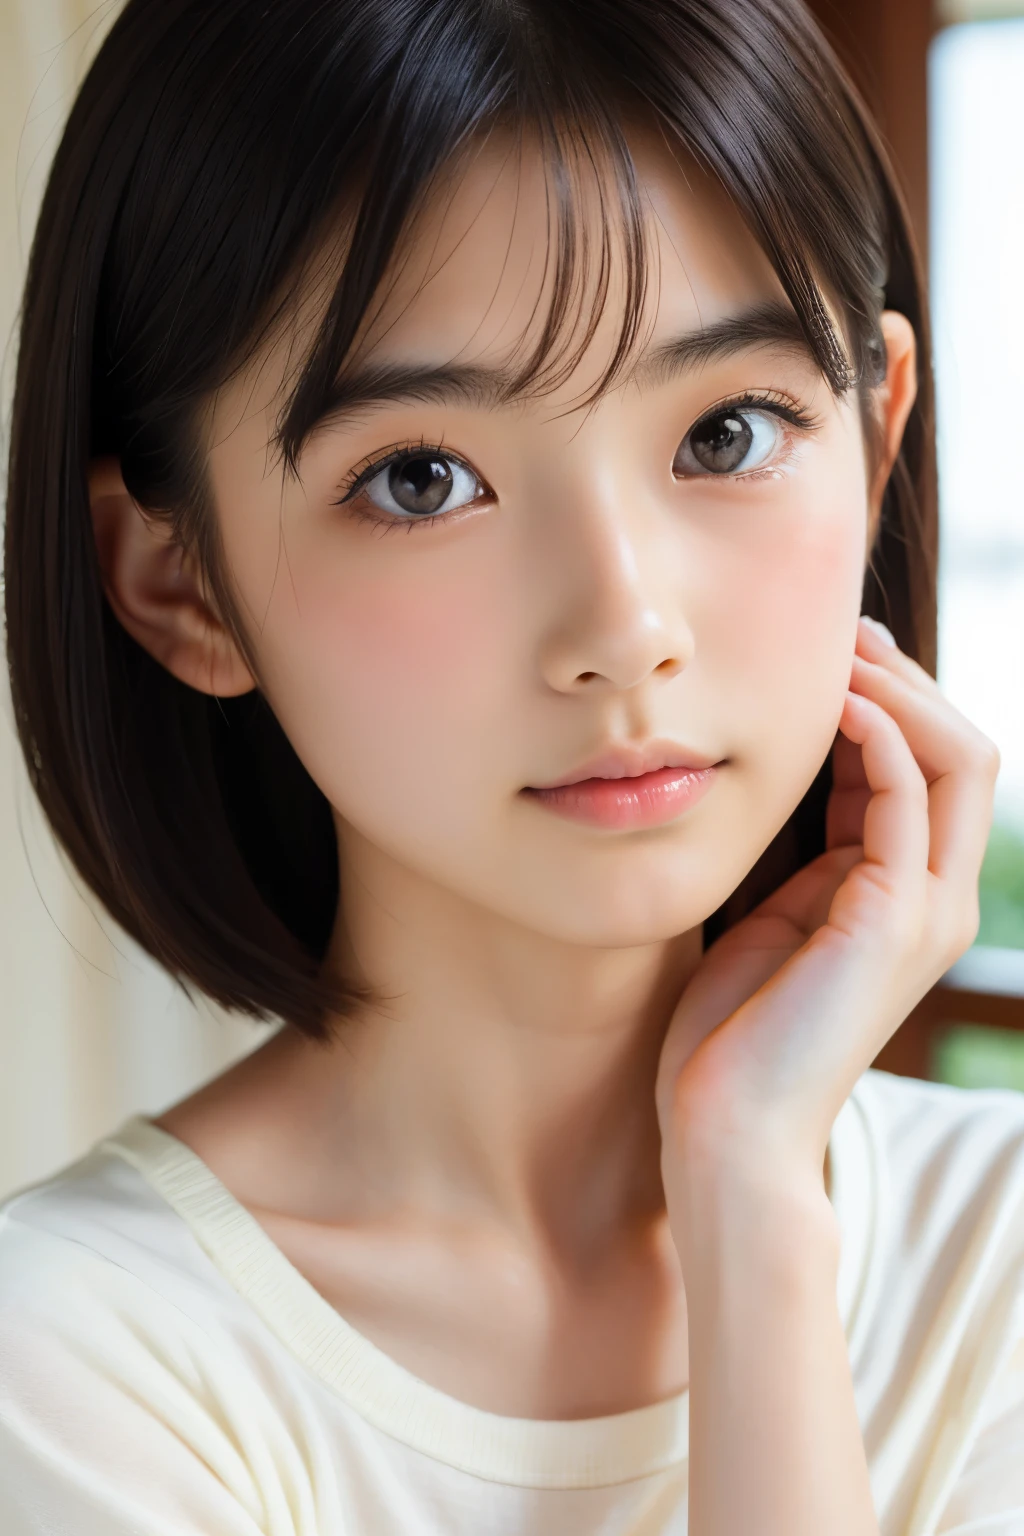 (美丽的 16 岁日本女性), 可爱的脸孔, (深雕的面容:0.7), (雀斑:0.6), 柔光,健康白皙的肌肤, 害羞的, 短发, (严肃的表情), (明亮的眼睛), 薄的